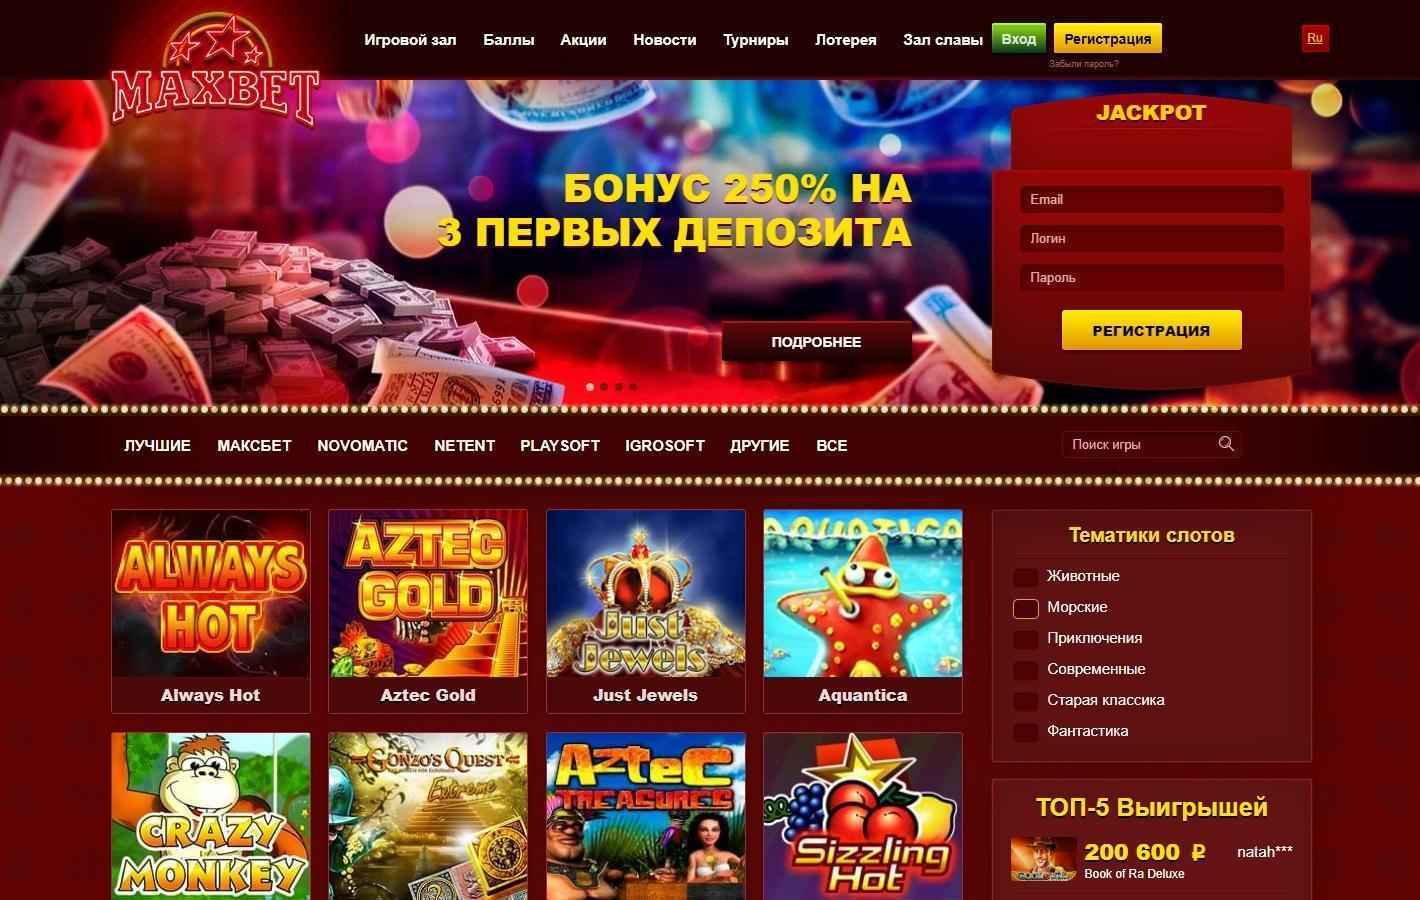 Максбет ру vip x casino онлайн casino x91 ru